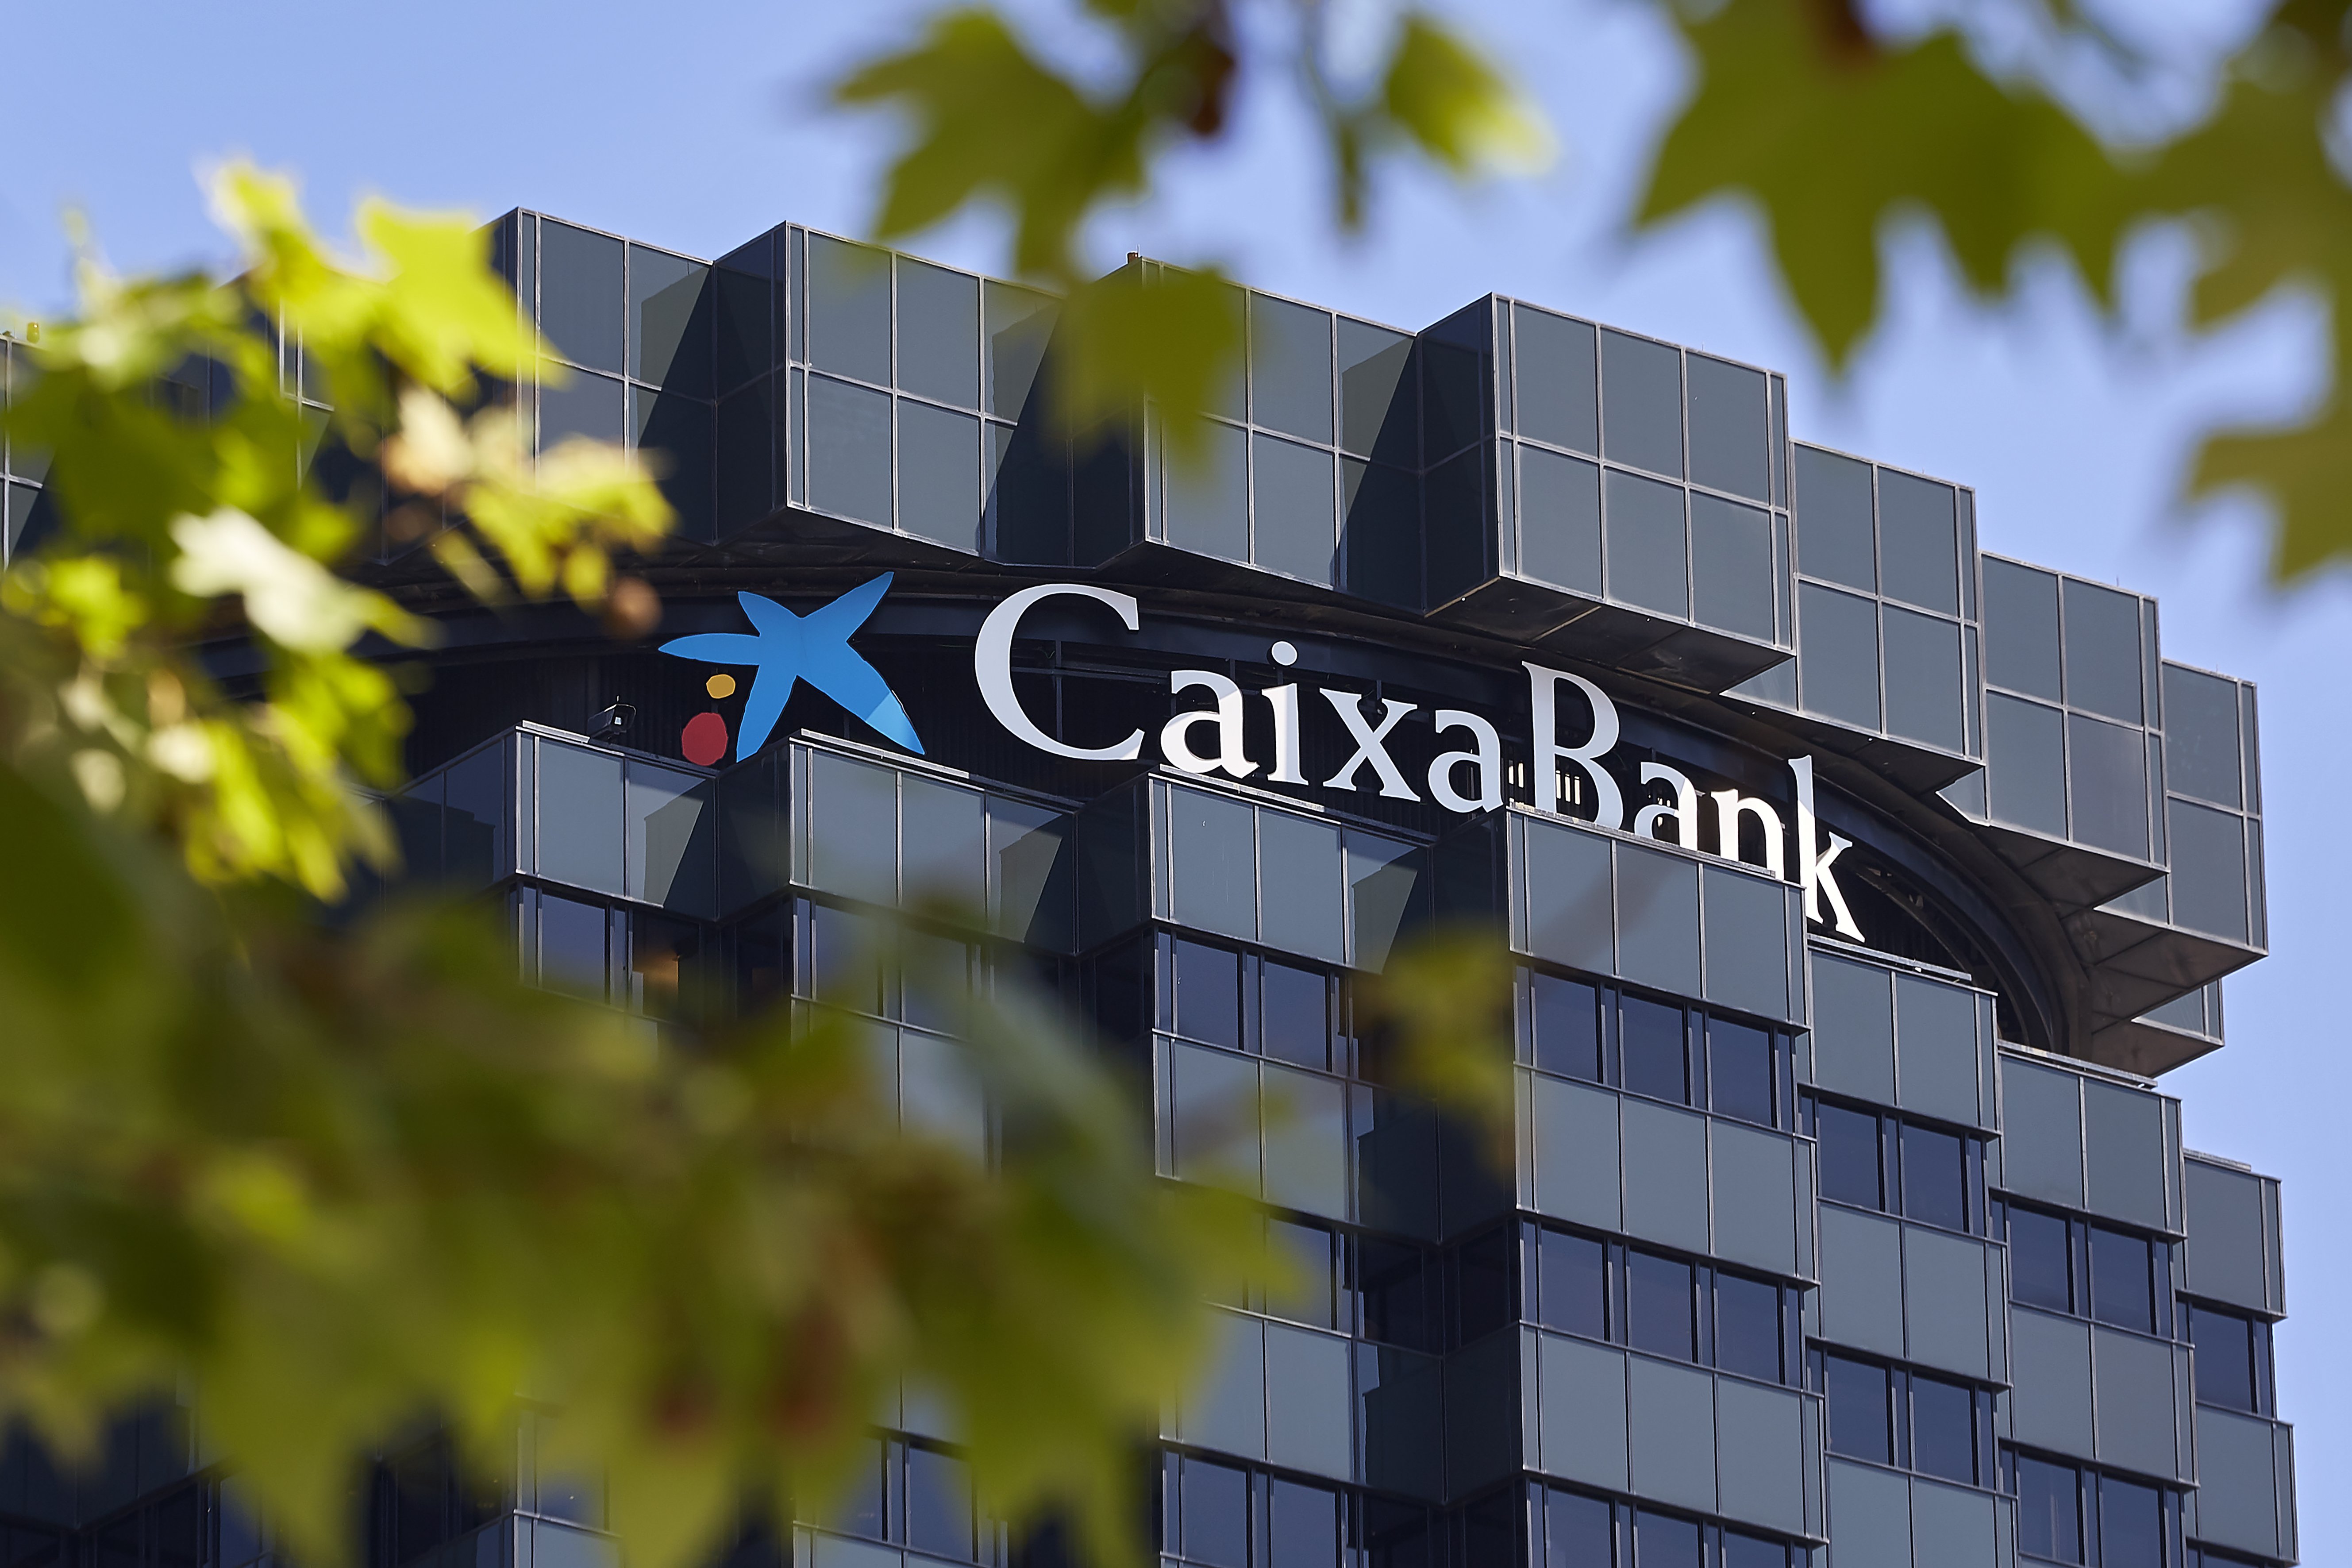 La actividad de CaixaBank aporta el 0,96% al PIB español